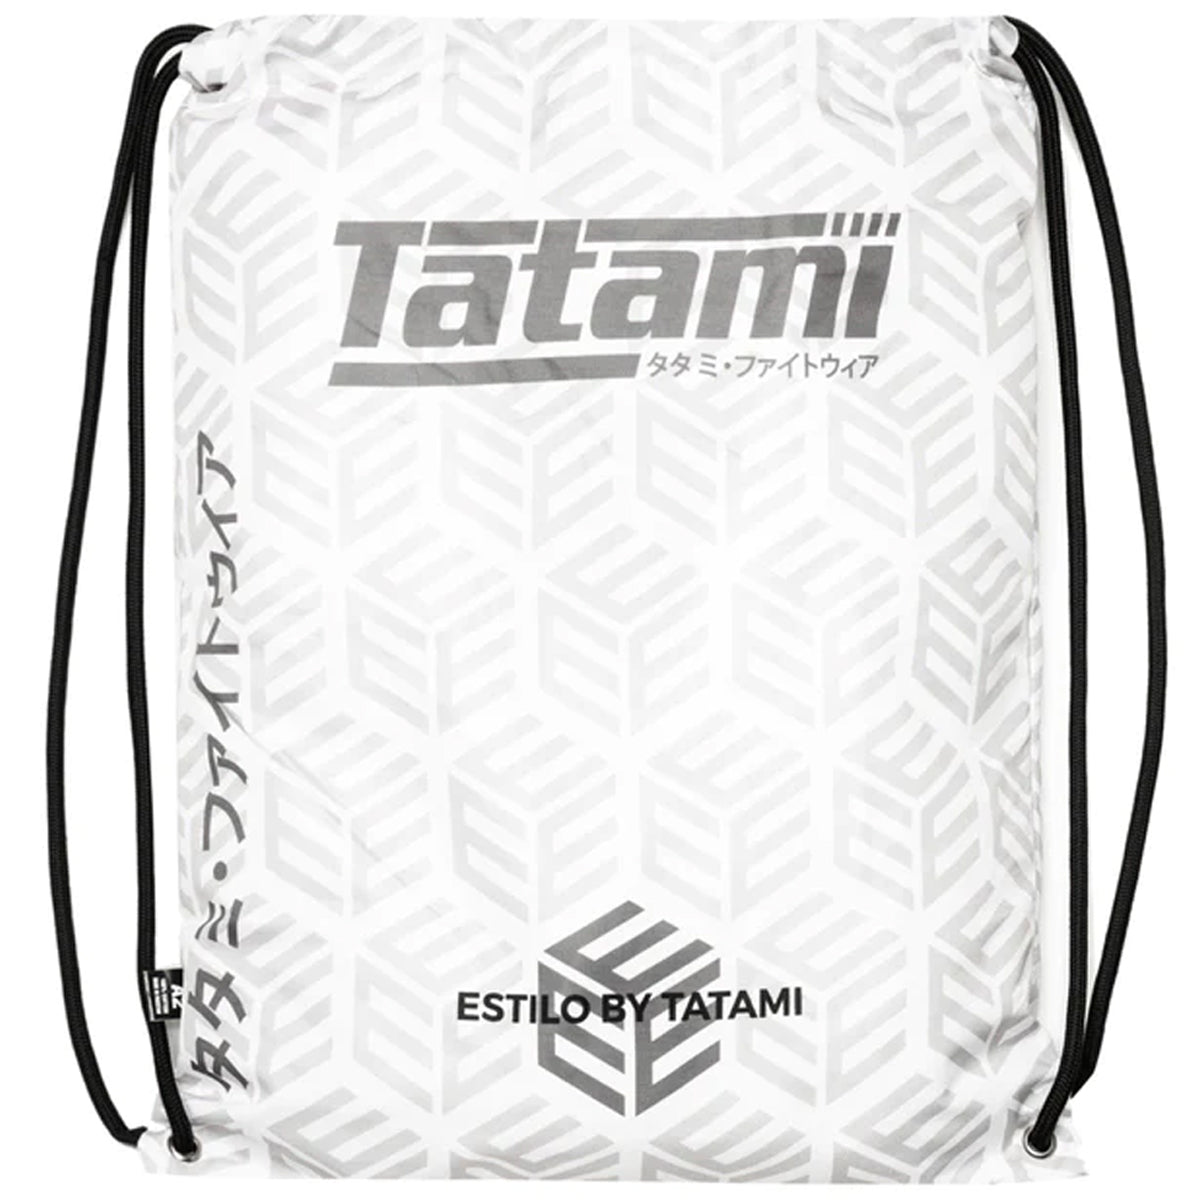 Tatami Fightwear Estilo Black Label BJJ Gi - Gray/White Tatami Fightwear